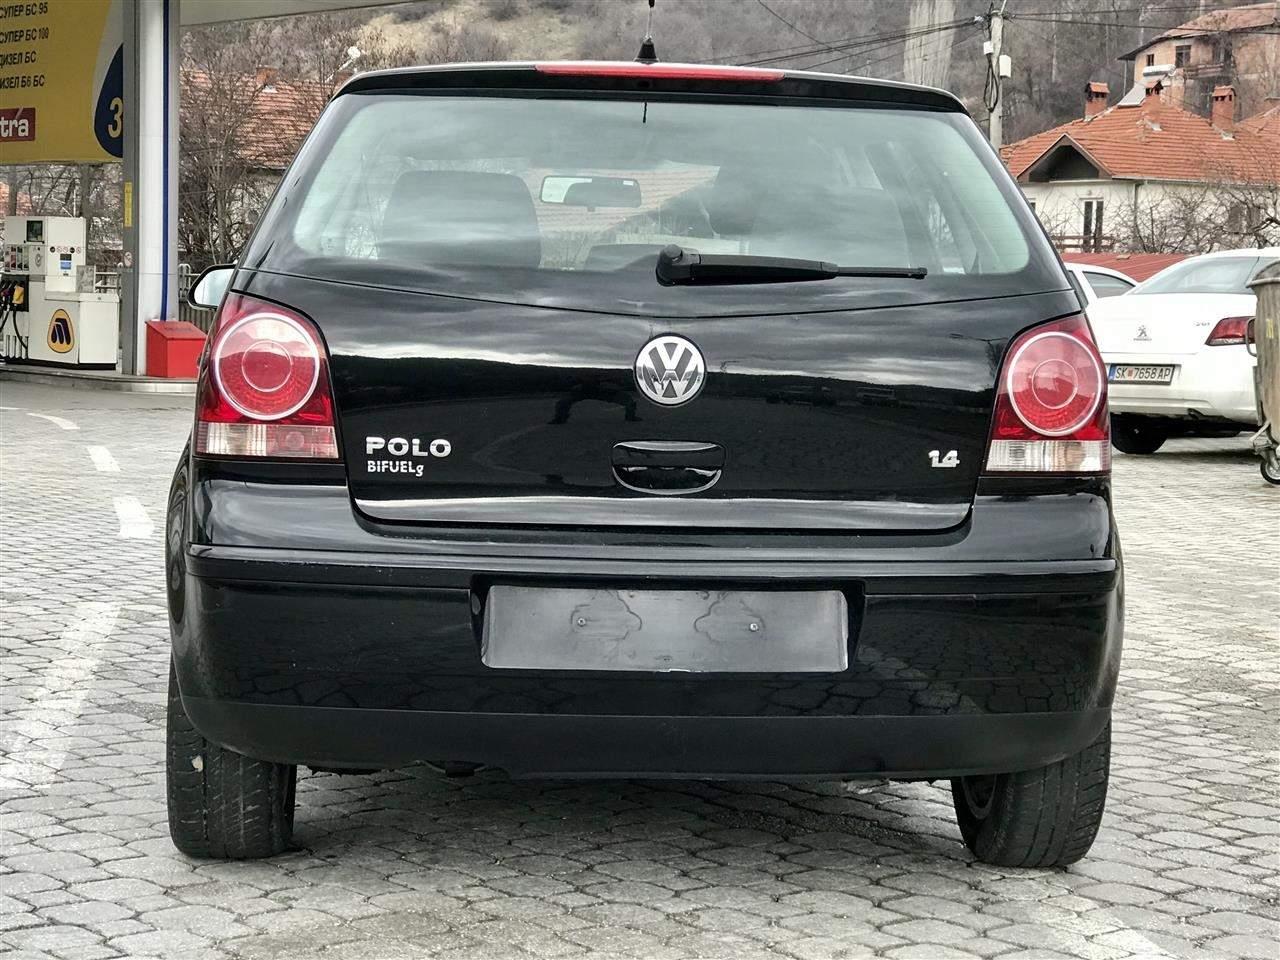 VW Polo 1.4 Bifuel LPG 09 Крива Паланка